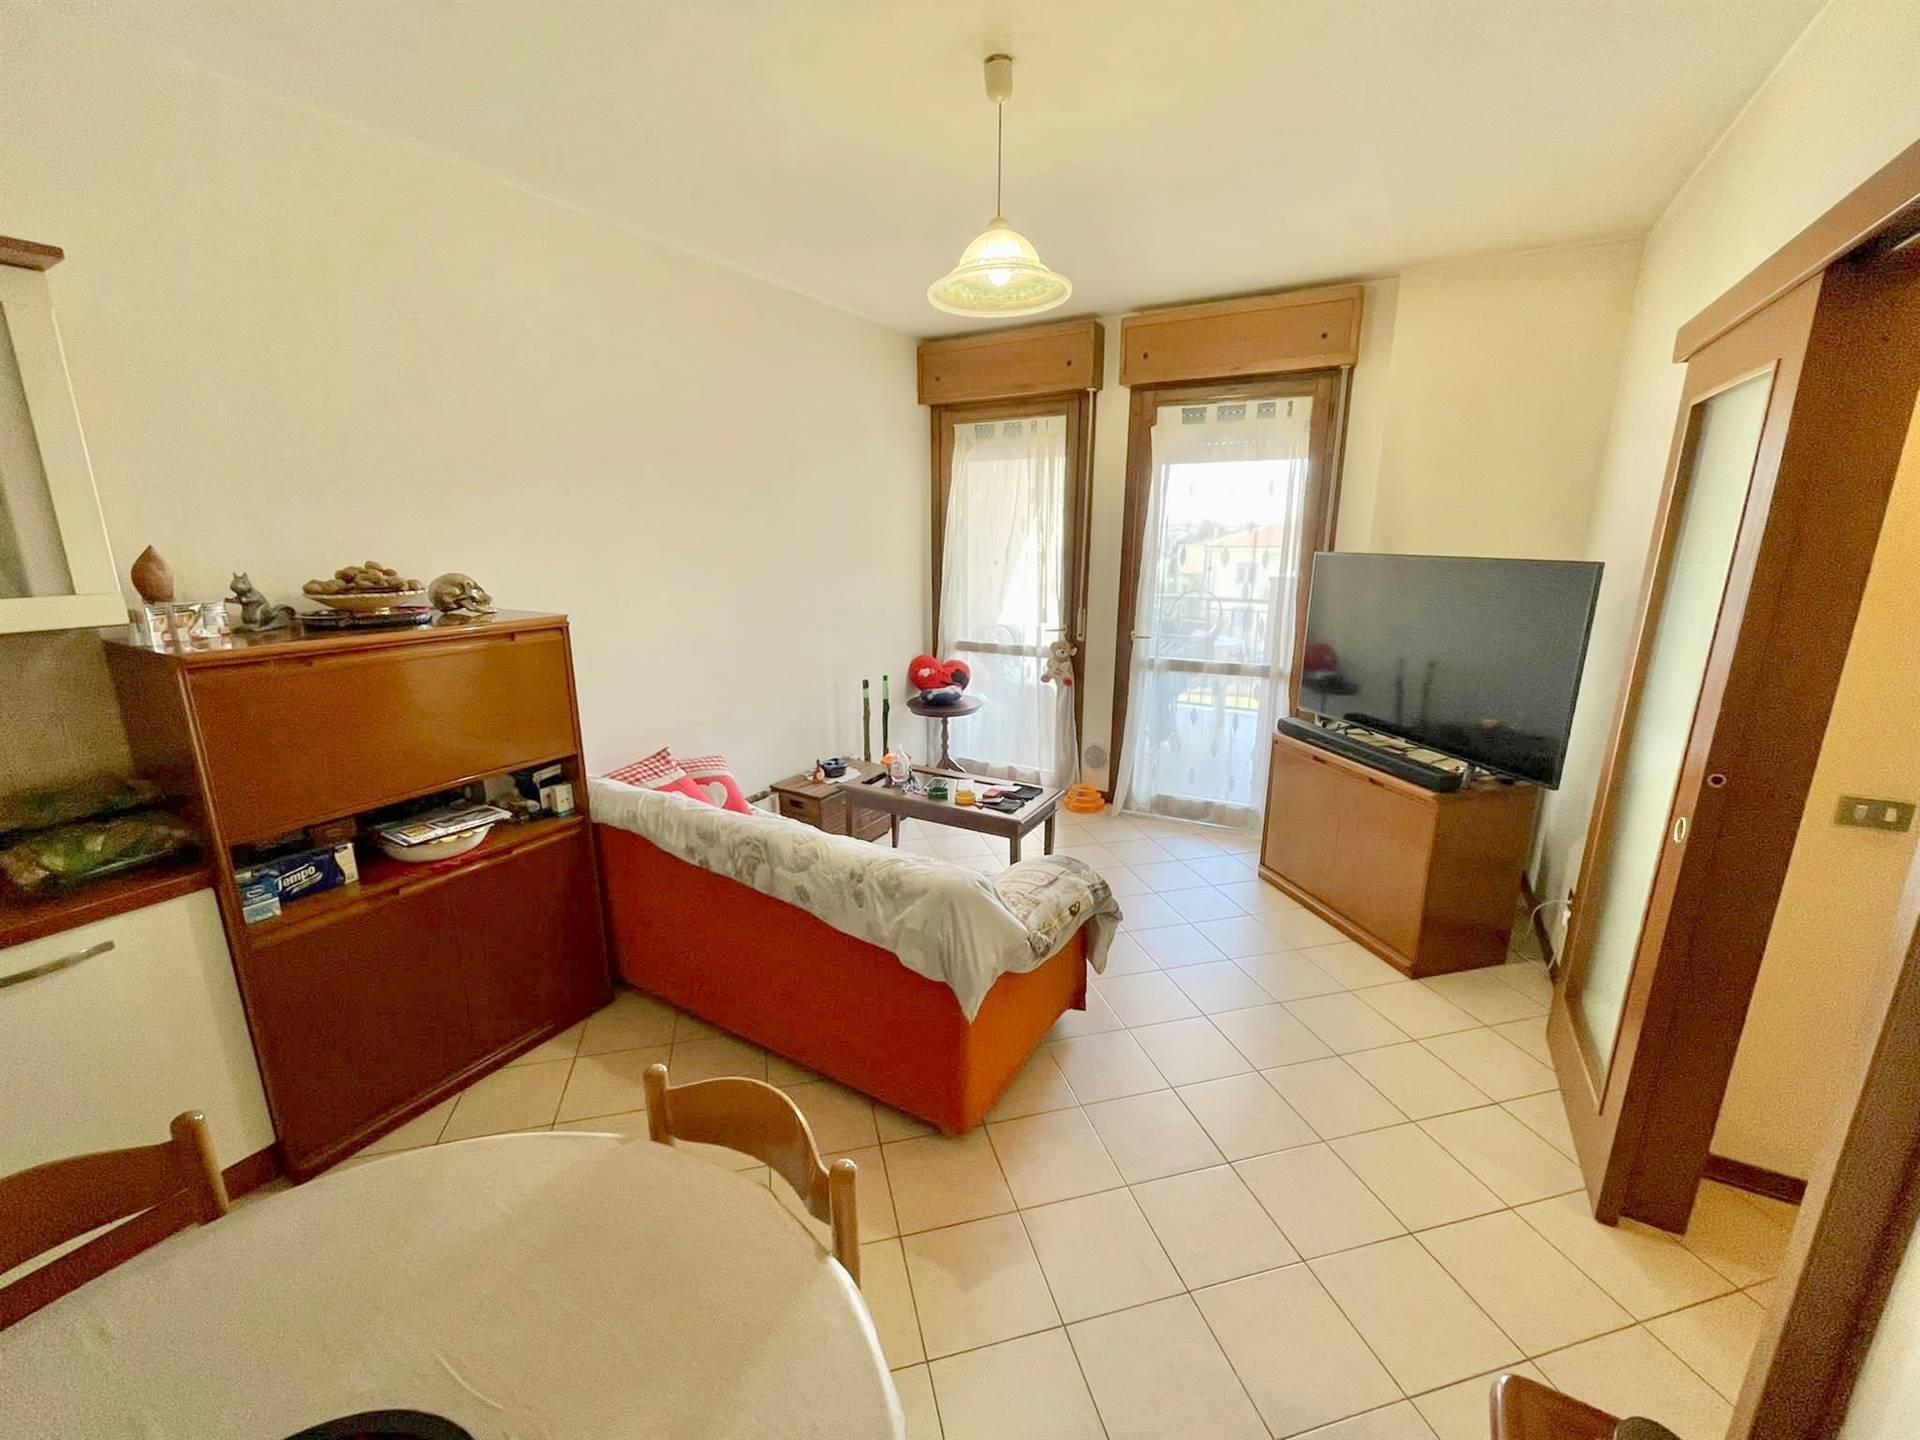 Appartamento in vendita a Borgo Virgilio, 2 locali, zona Località: CERESE, prezzo € 65.000 | CambioCasa.it